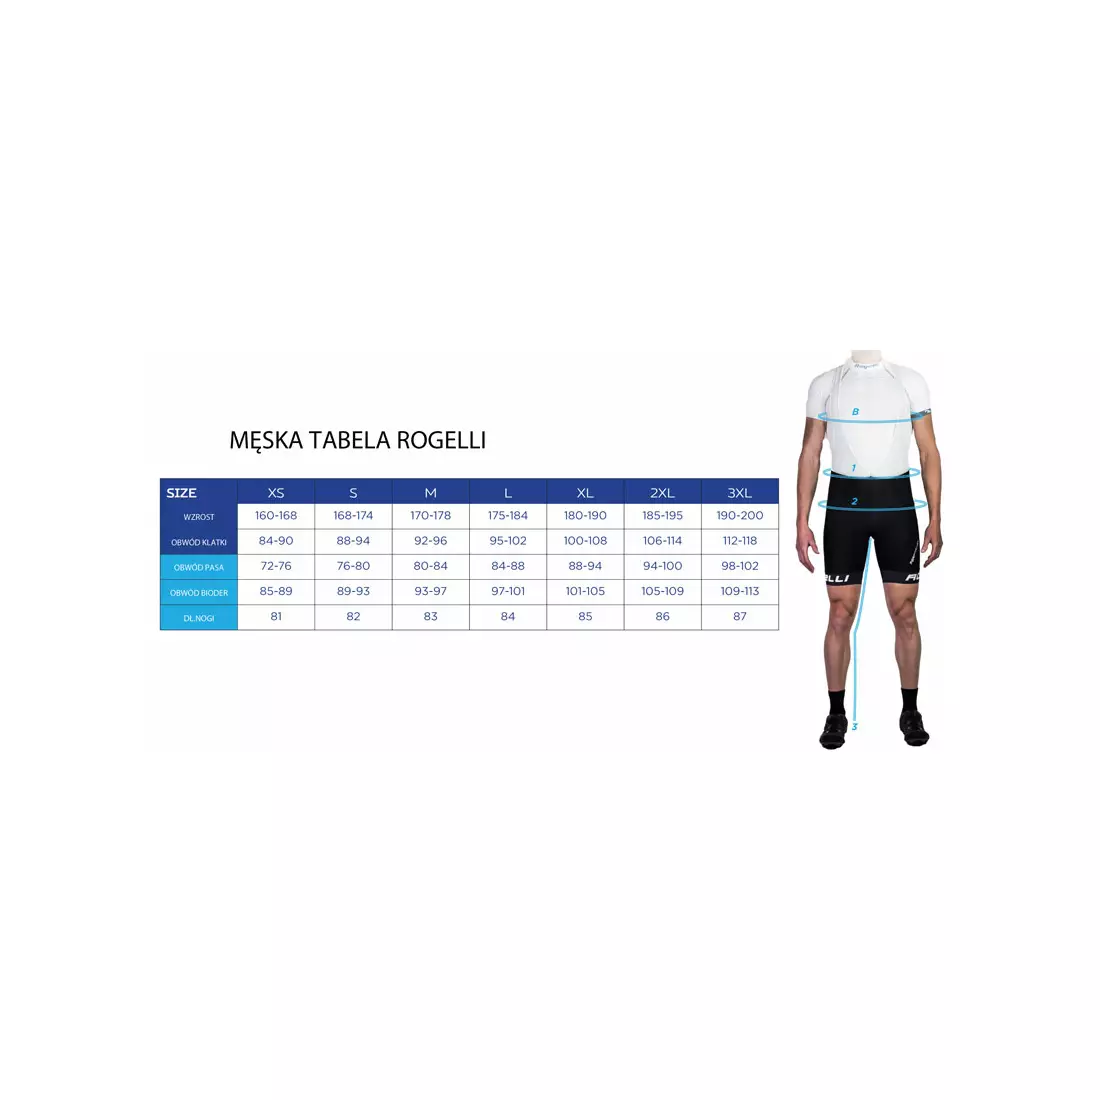 ROGELLI pantaloni de ciclism pentru bărbați VENOSA 3.0 cu reflexie, negru